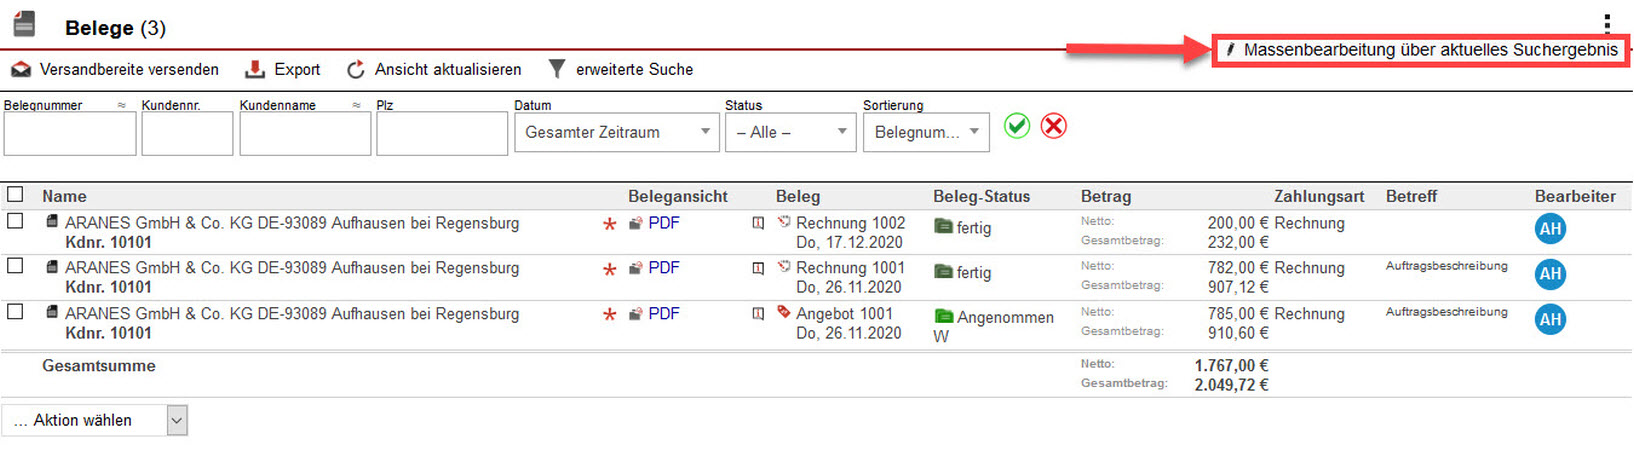 Screenshot Belegliste mit markierter Option „Massenbearbeitung über aktuelles Suchergebnis“